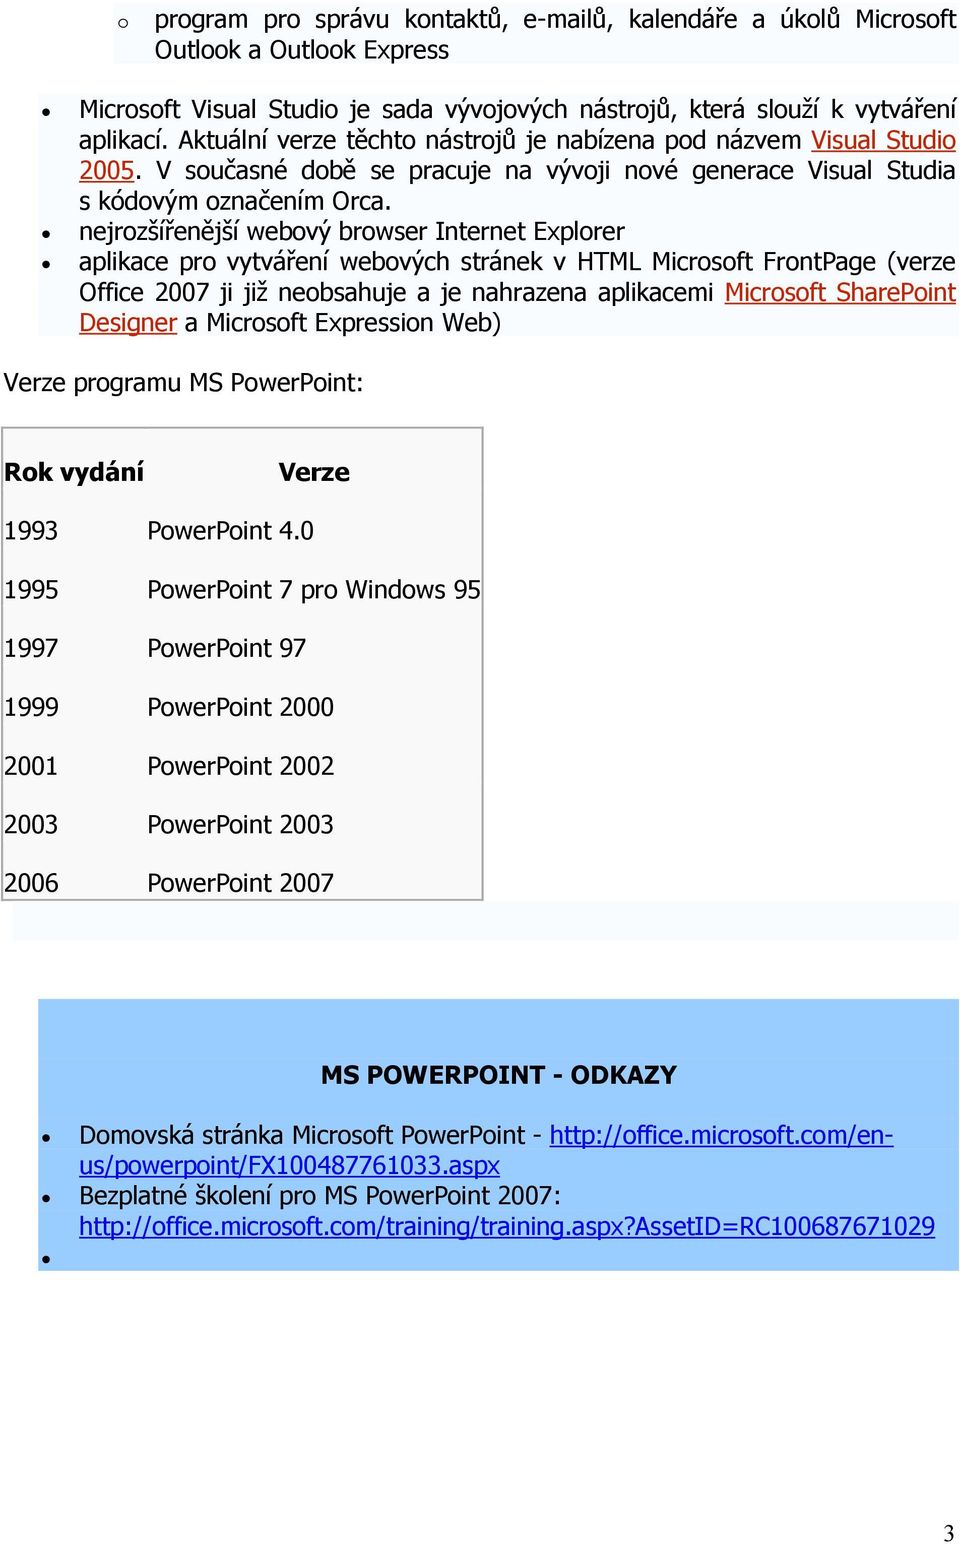 nejrozšířenější webový browser Internet Explorer aplikace pro vytváření webových stránek v HTML Microsoft FrontPage (verze Office 2007 ji již neobsahuje a je nahrazena aplikacemi Microsoft SharePoint